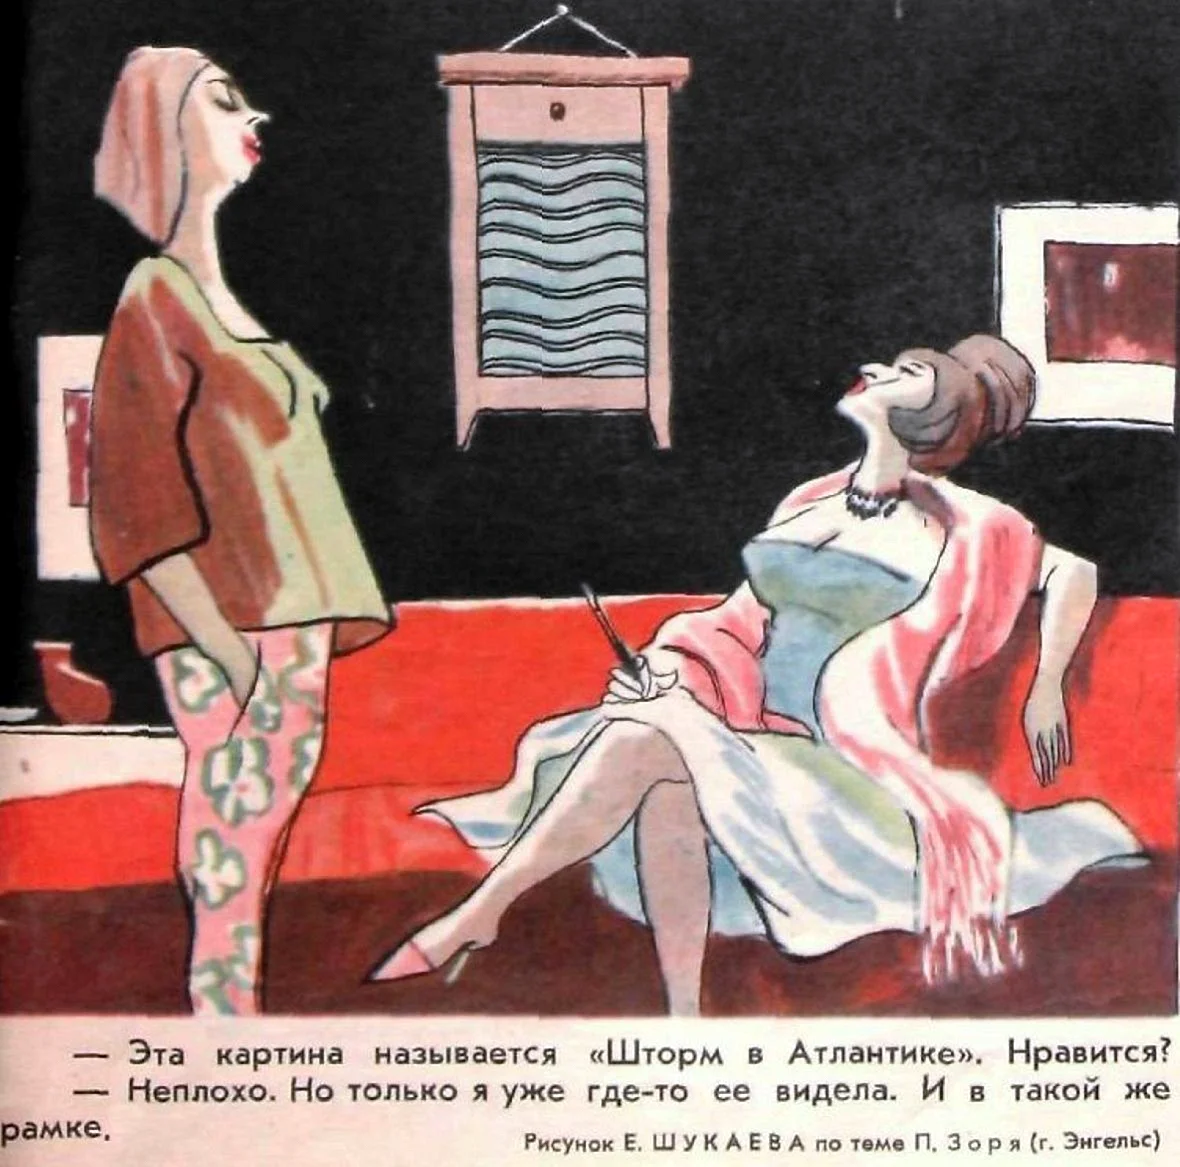 Иллюстрации из журнала крокодил СССР